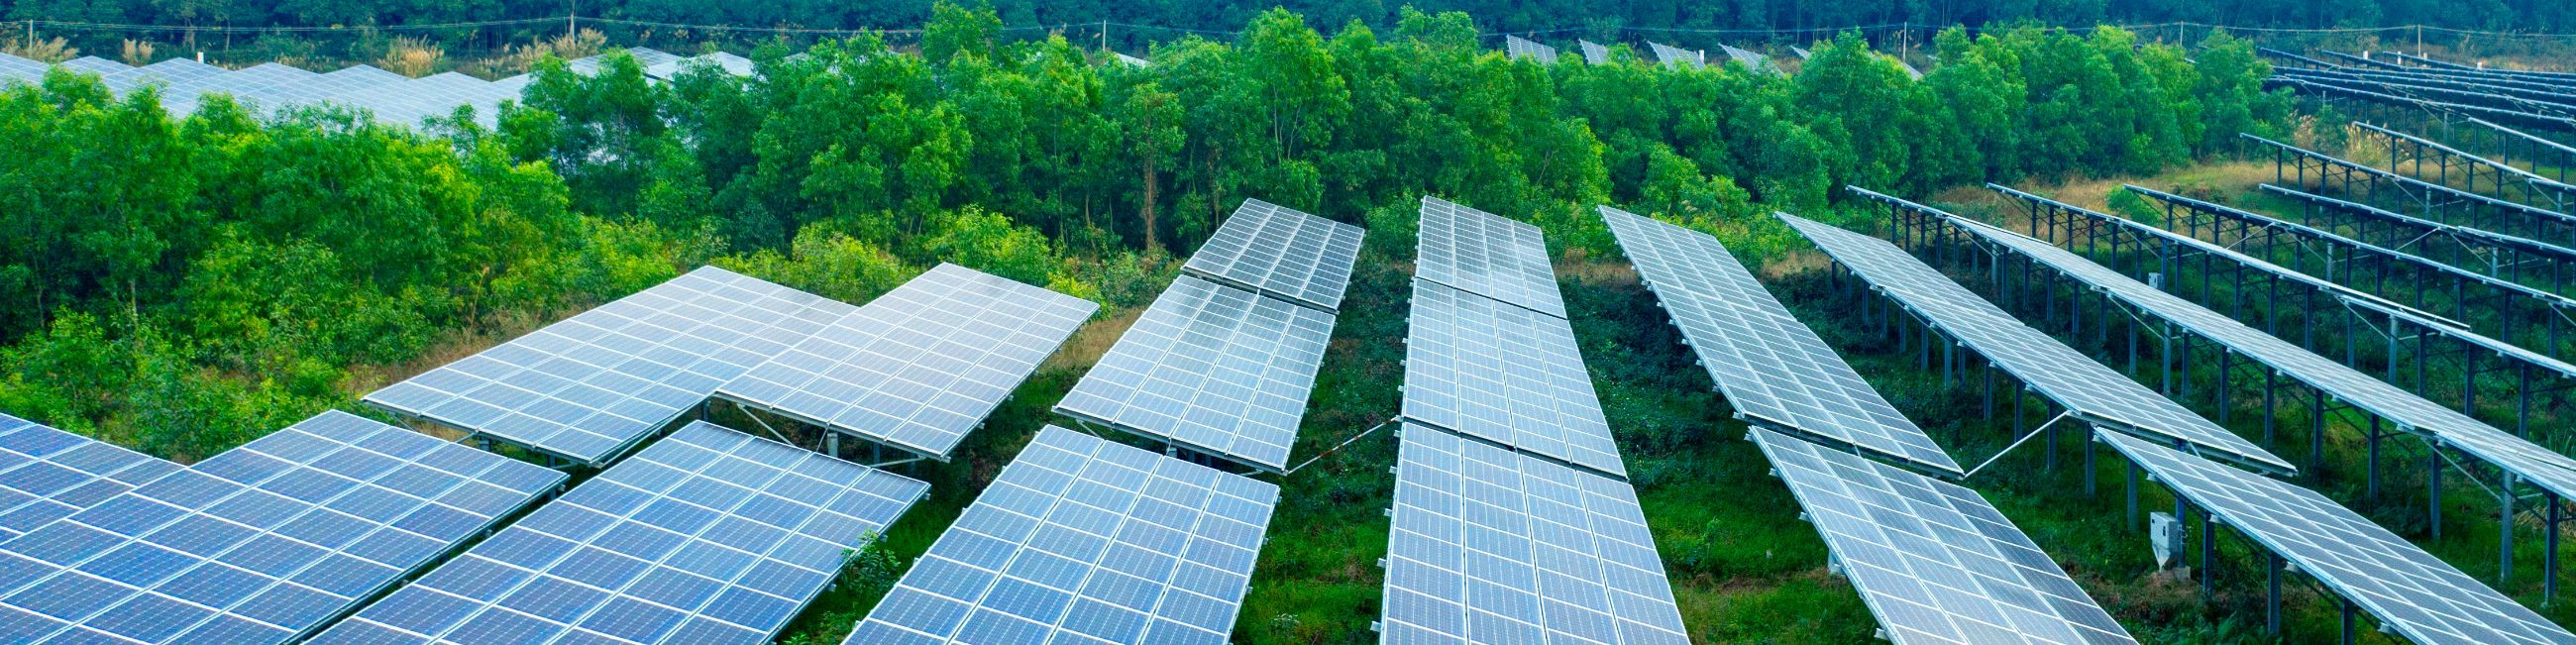 Solaring OÜ on 100% Eesti kapitalil põhinev ettevõte, kes annab oma panuse keskkonnasõbralikule tulevikule. Põhitegevusse kuuluvad päikeseparkide terviklahendused. Planeerime, projekteerime, dokumenteerime, ehitame ja paigaldame päikeseelektrijaamasid. Nutikad lahendused on meie suurim kirg.